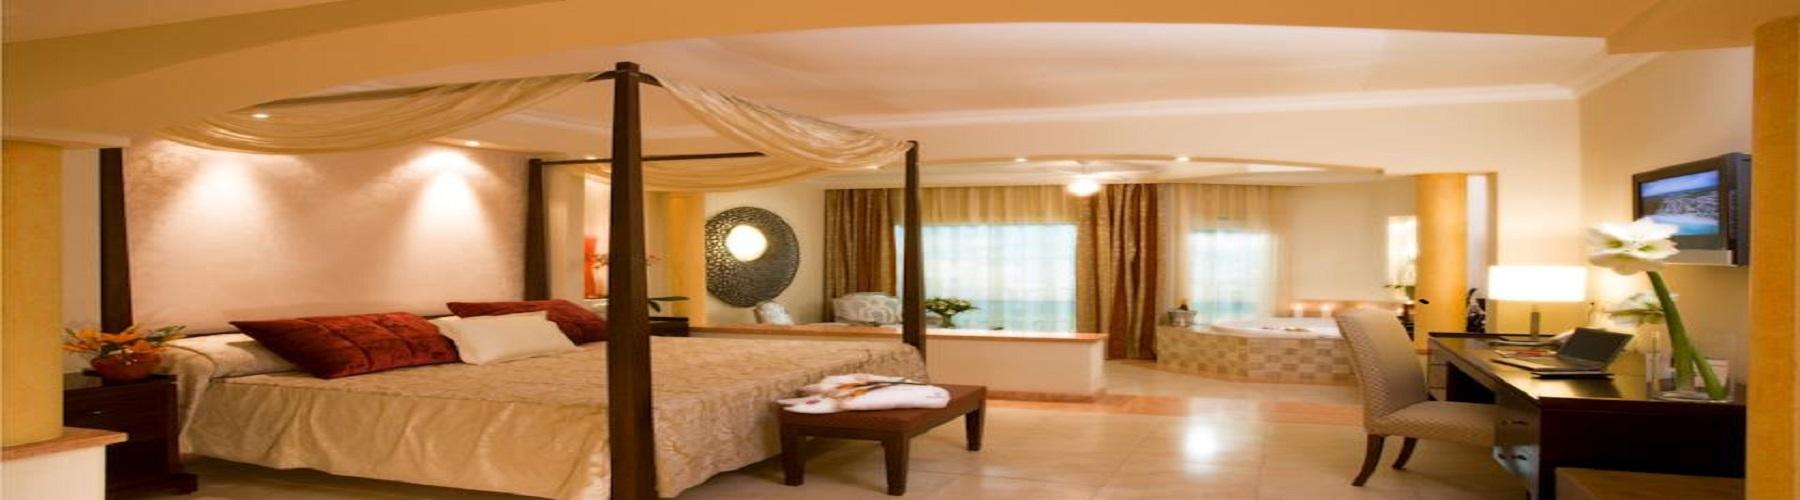 Забронировать отель Majestic Elegance Punta Cana 5*